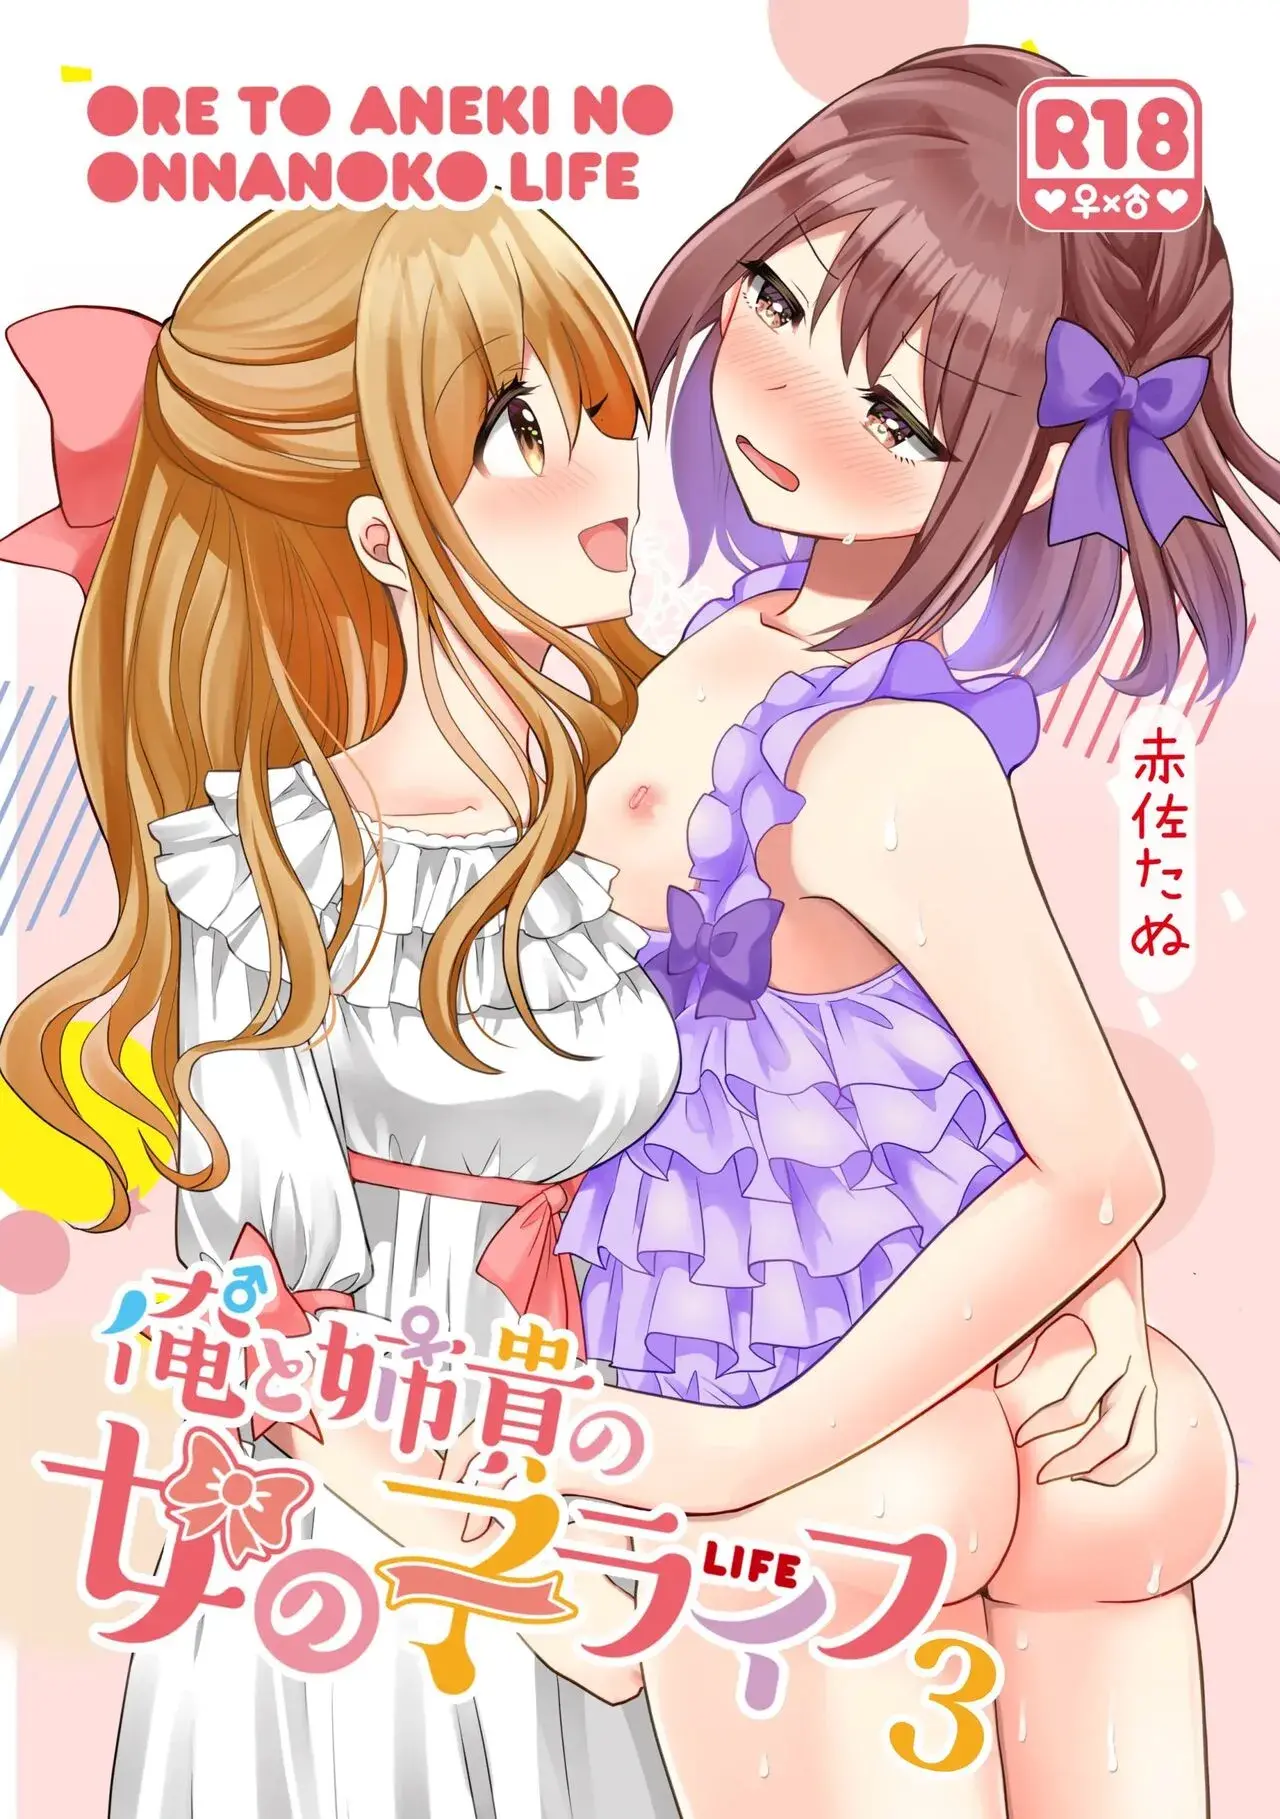 Lee manga hentai del artista Akasa Tanu. La hermana le practica "Sissygasm", lo que hace que el hermano se corra solo teniendo sexo anal sin tocar su verga. La sister entrena al hermano para ser una buena putita anal.